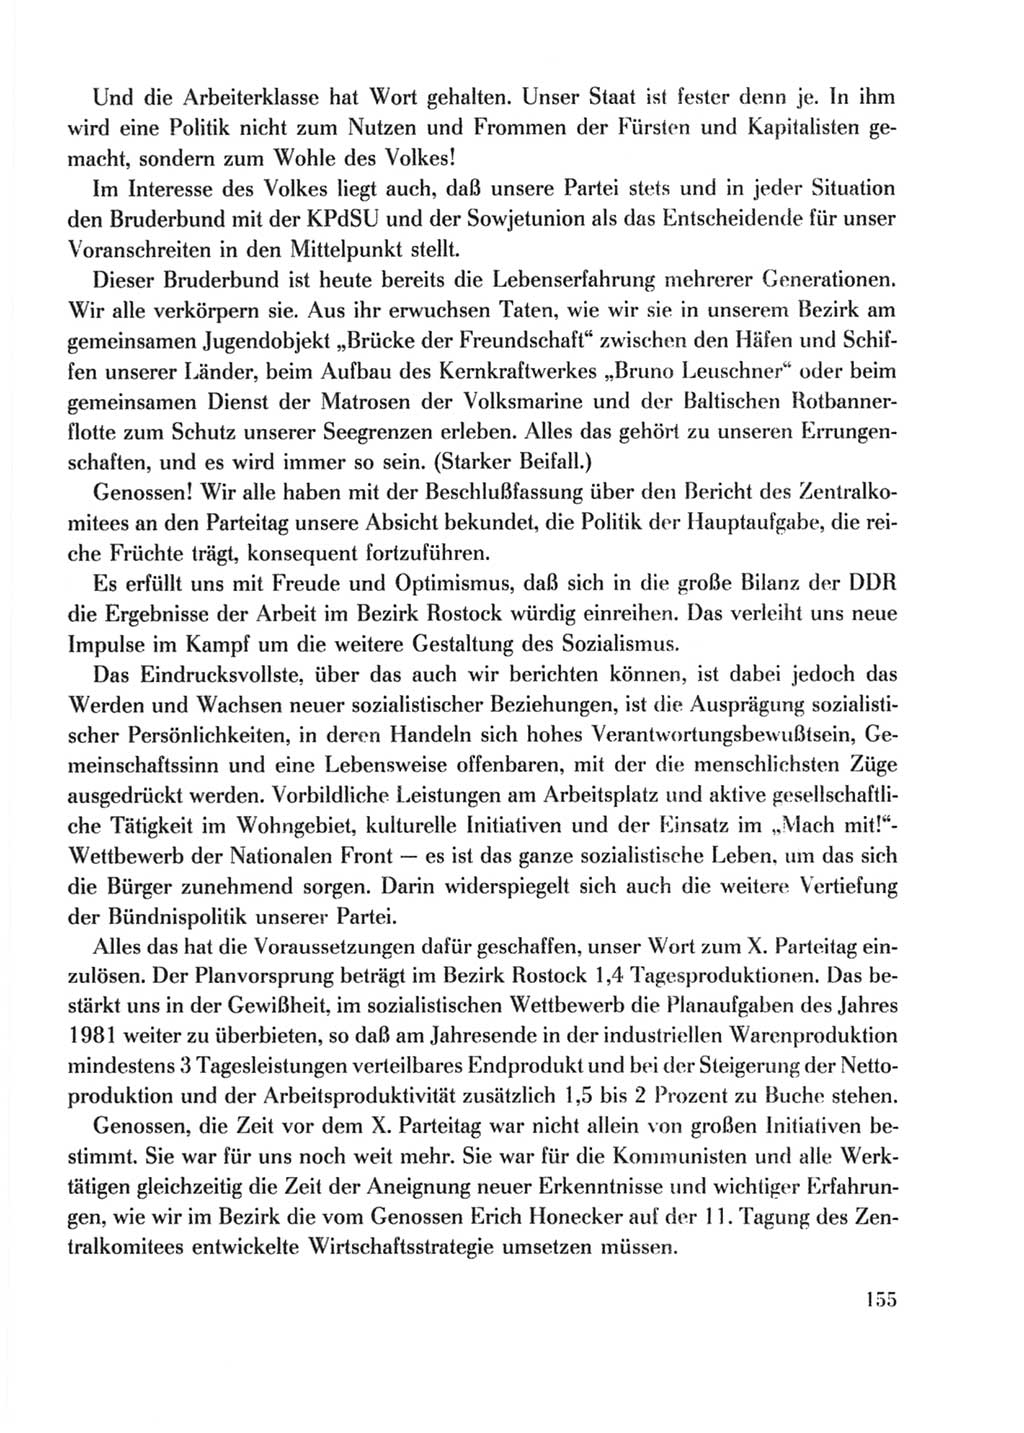 Protokoll der Verhandlungen des Ⅹ. Parteitages der Sozialistischen Einheitspartei Deutschlands (SED) [Deutsche Demokratische Republik (DDR)] 1981, Band 2, Seite 155 (Prot. Verh. Ⅹ. PT SED DDR 1981, Bd. 2, S. 155)